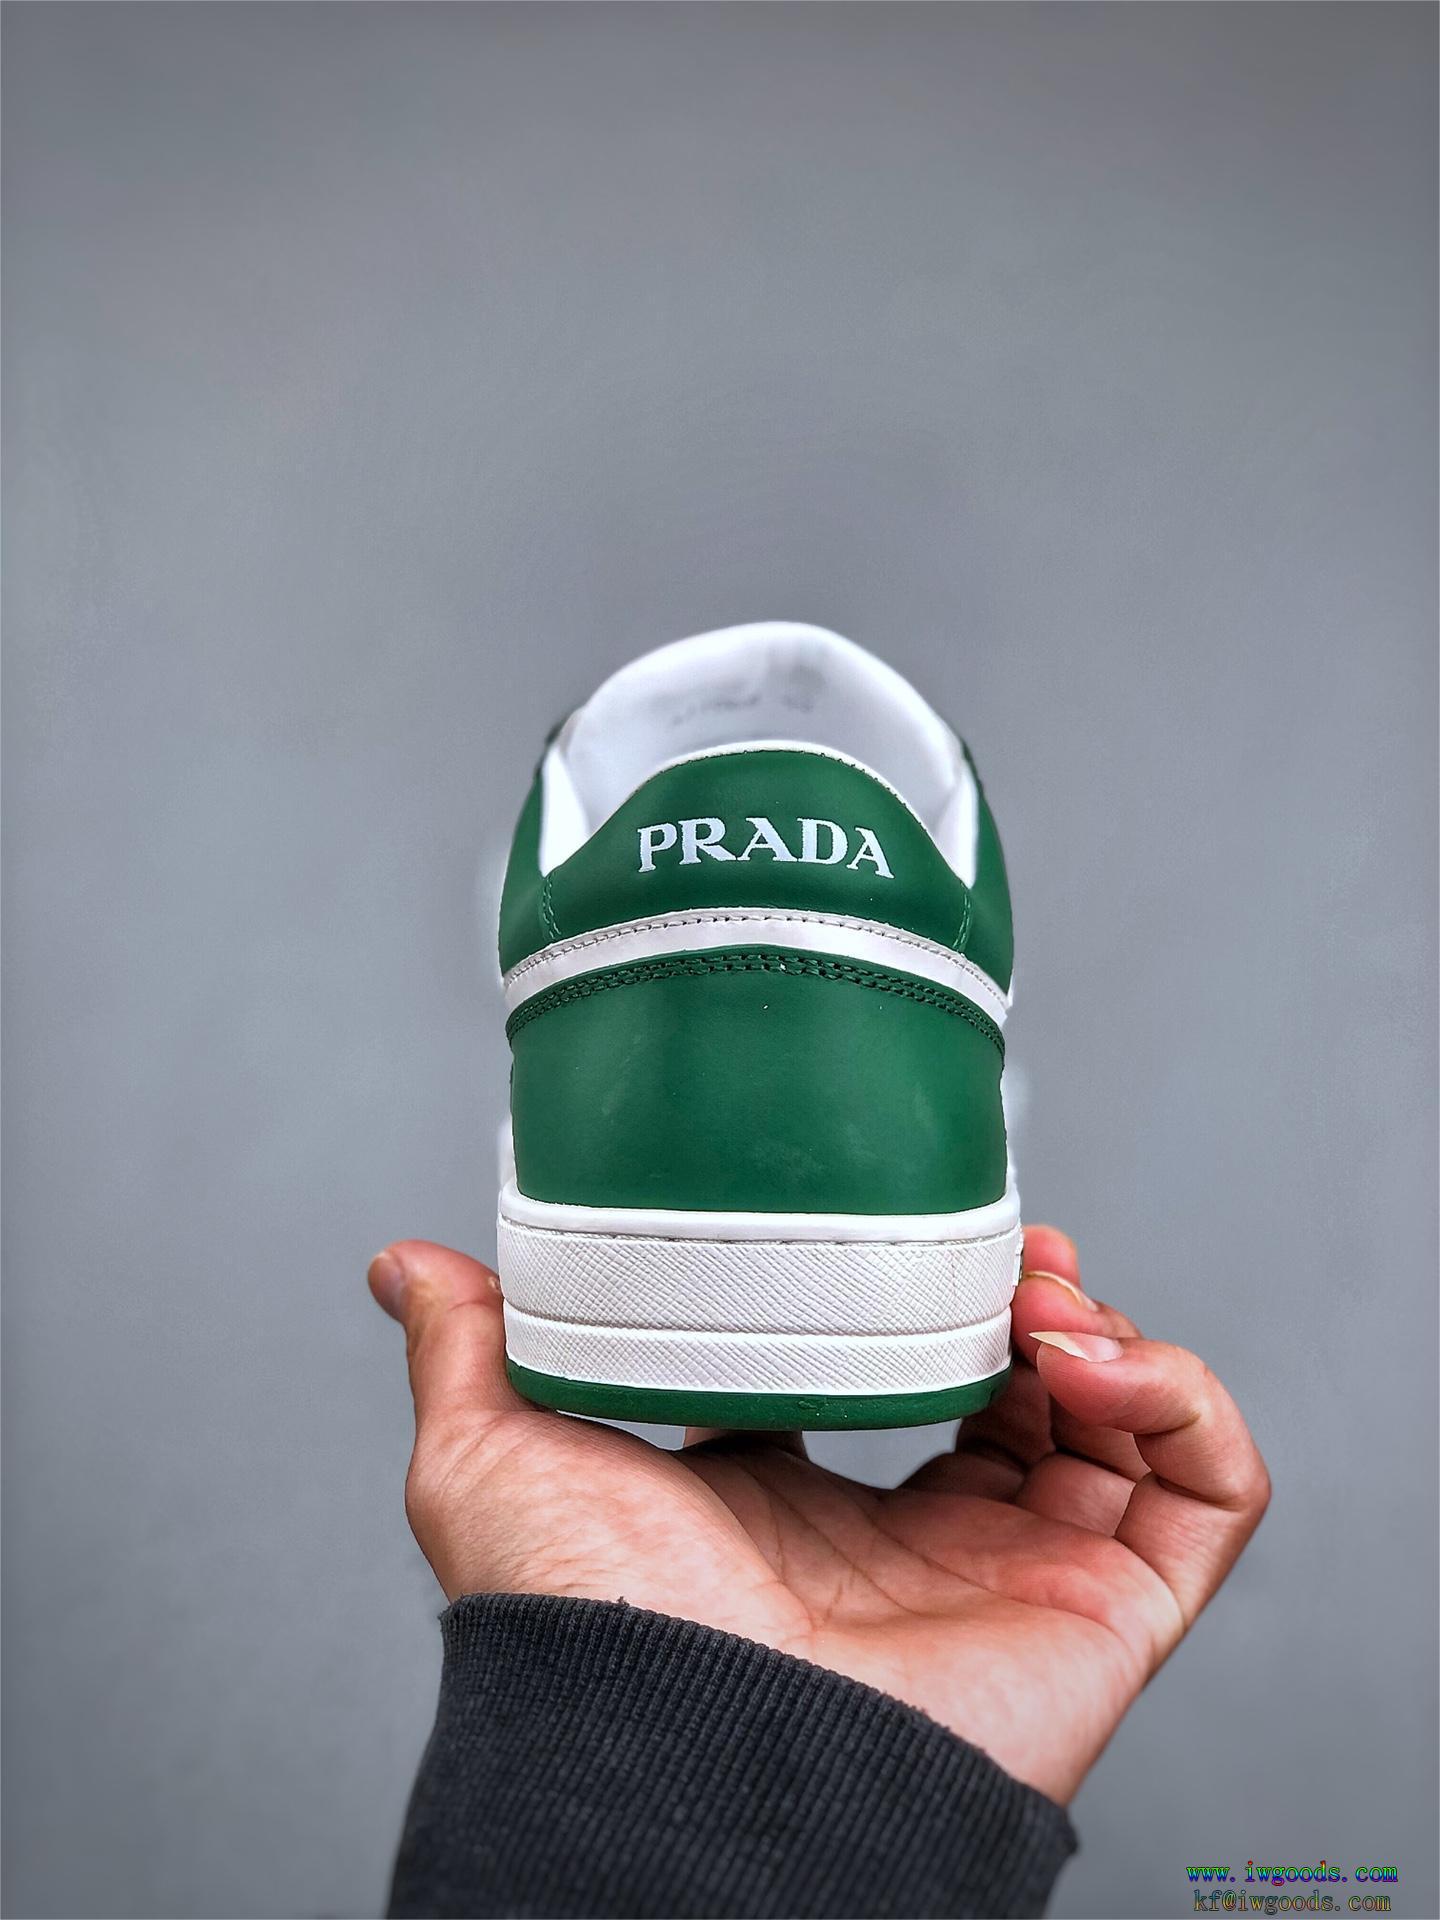 プラダPRADA靴夏のいいのアイテム手持ち在庫あり海外セレブ愛用ブランド 偽物 激安 通販